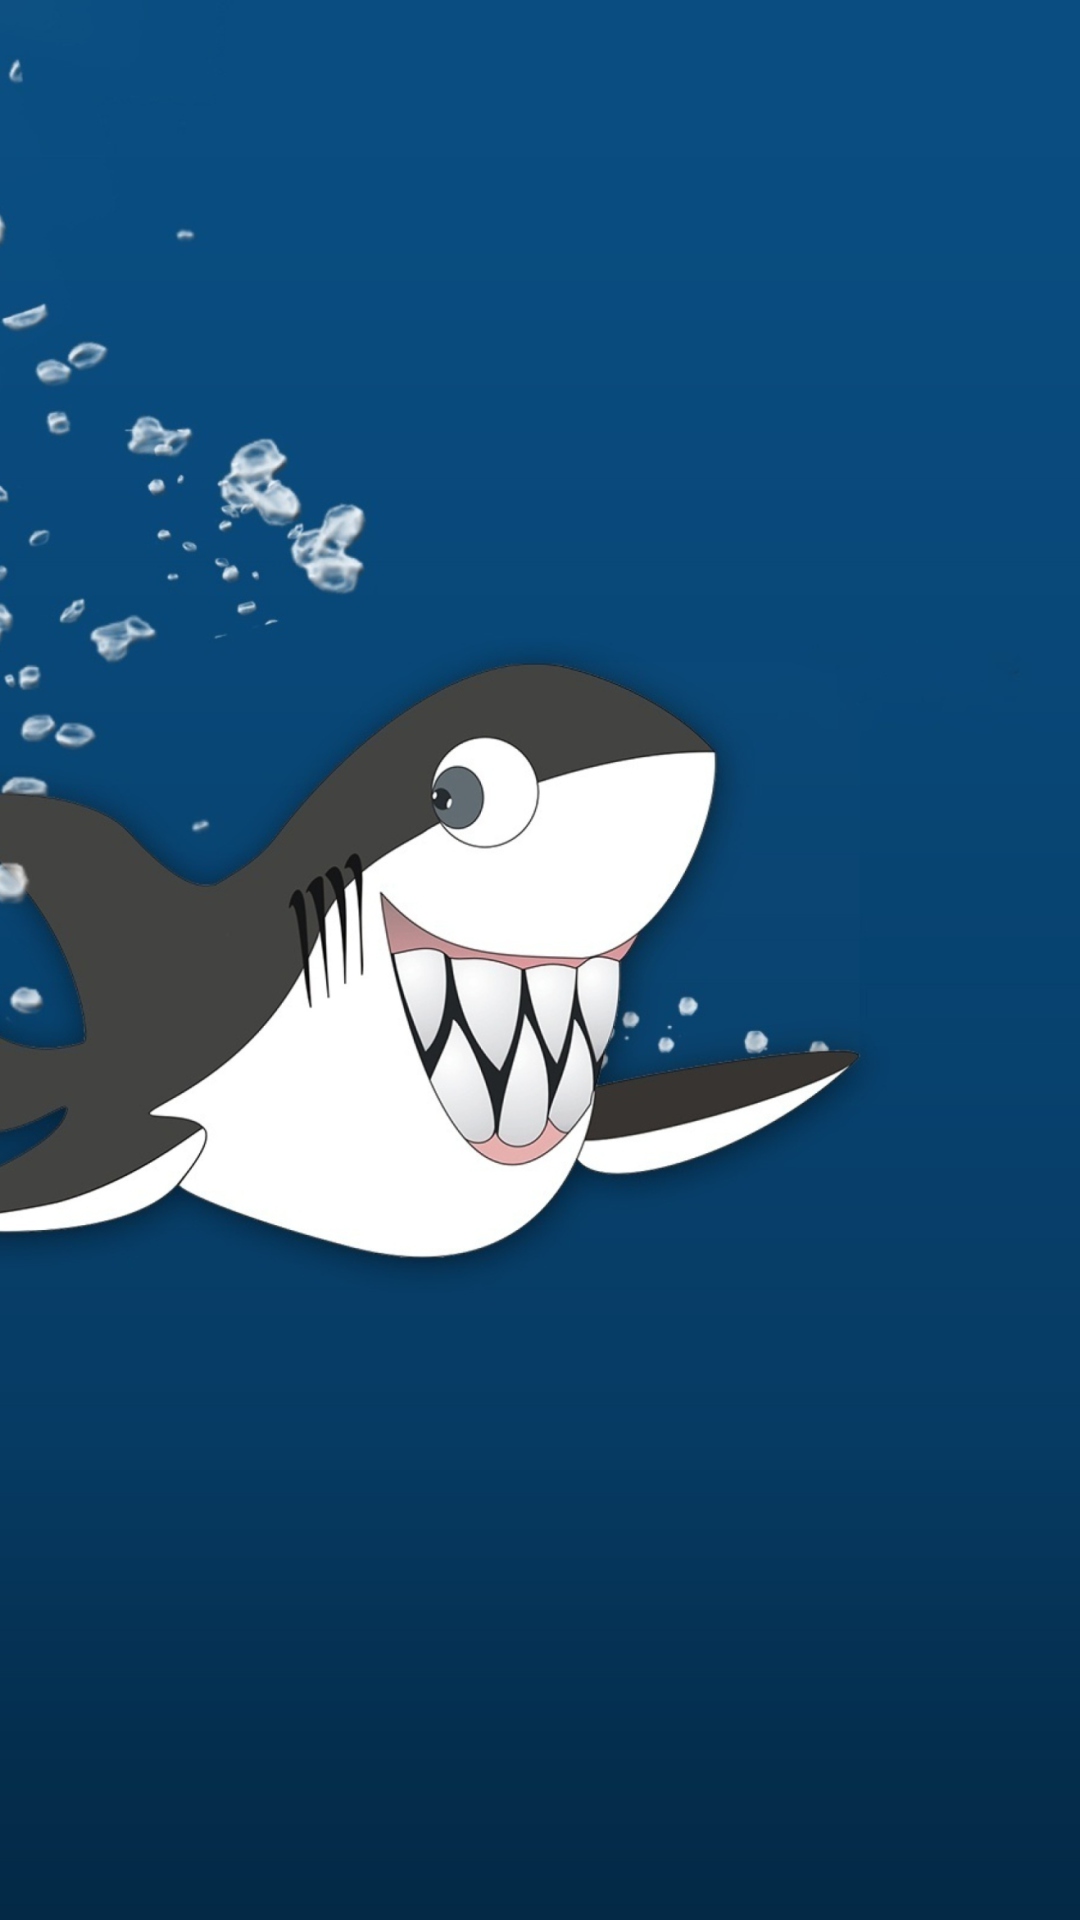 Funny Shark wallpaper 1080x1920